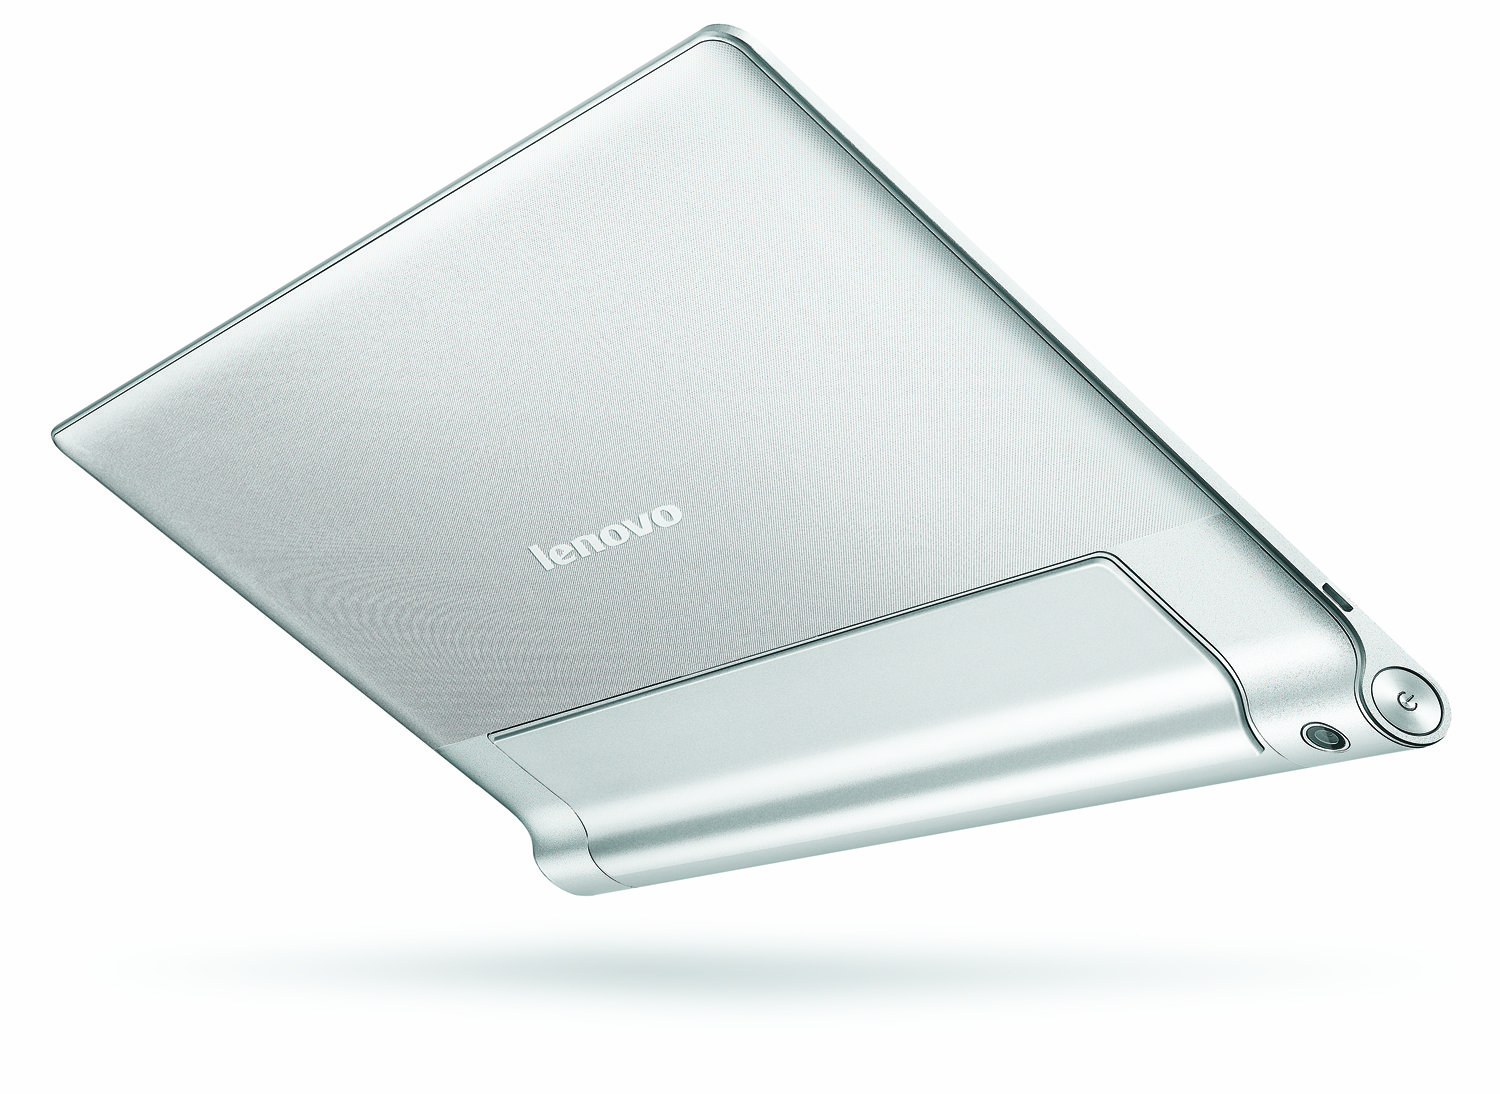 Lenovo-Yoga-Tablet-10-HD+-_02